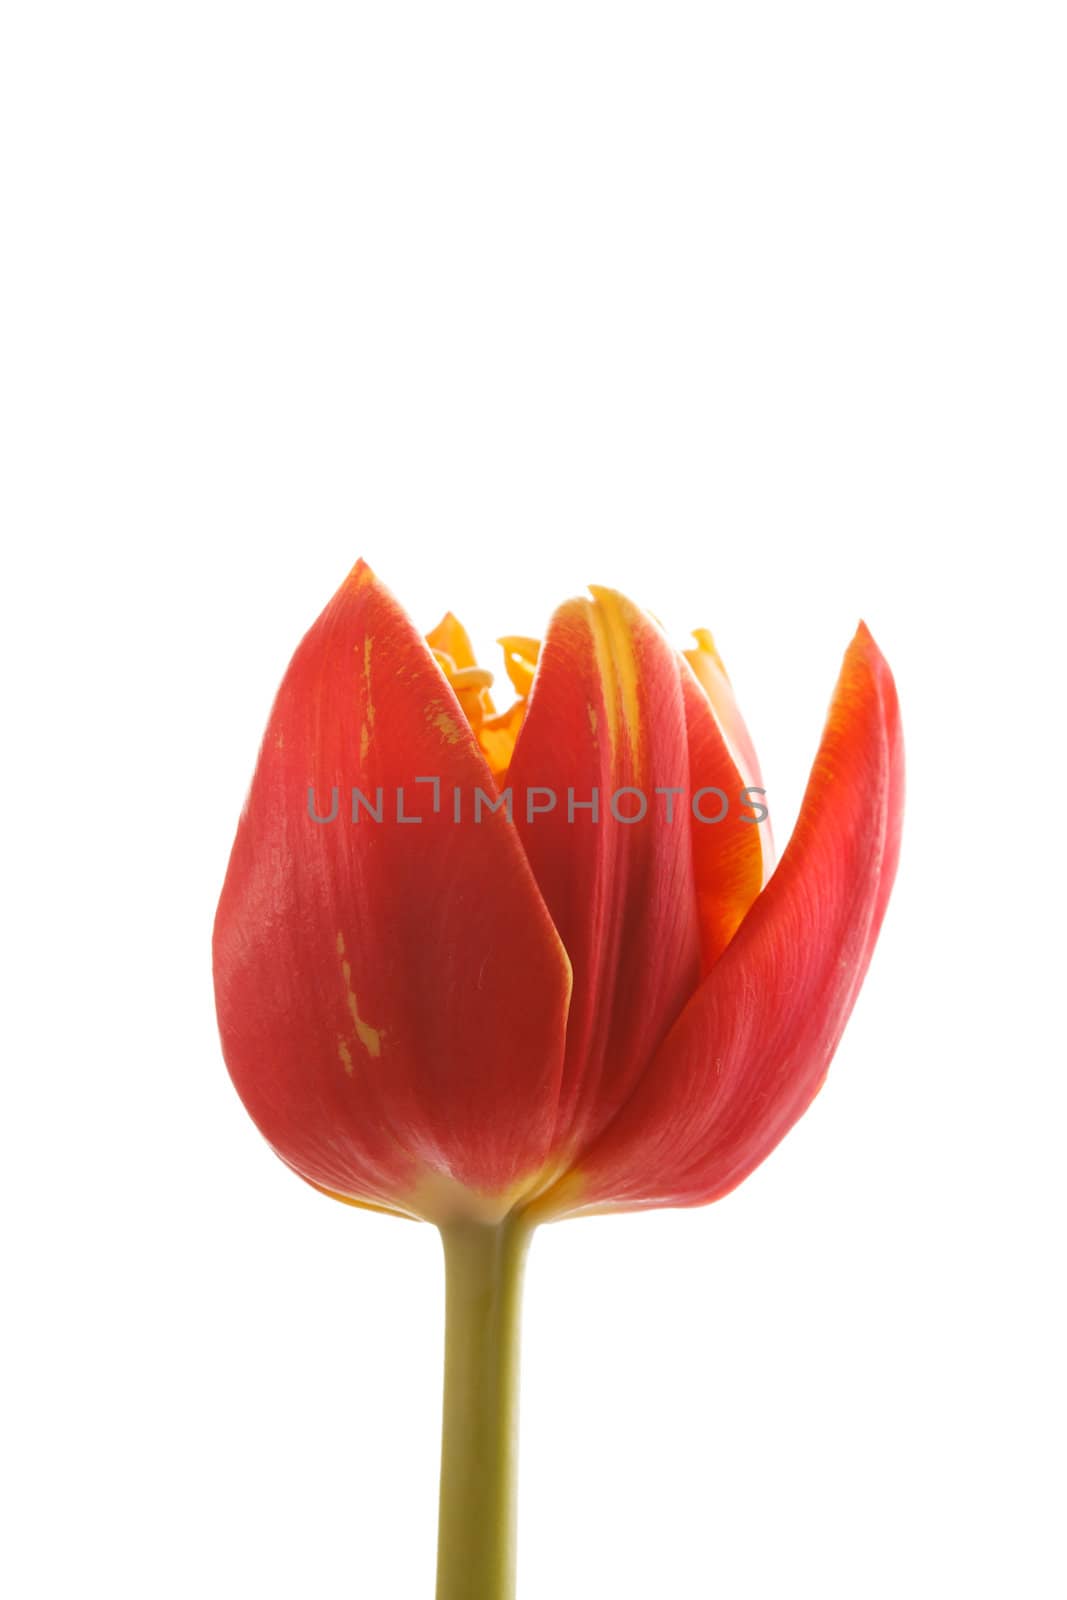 nice tulip